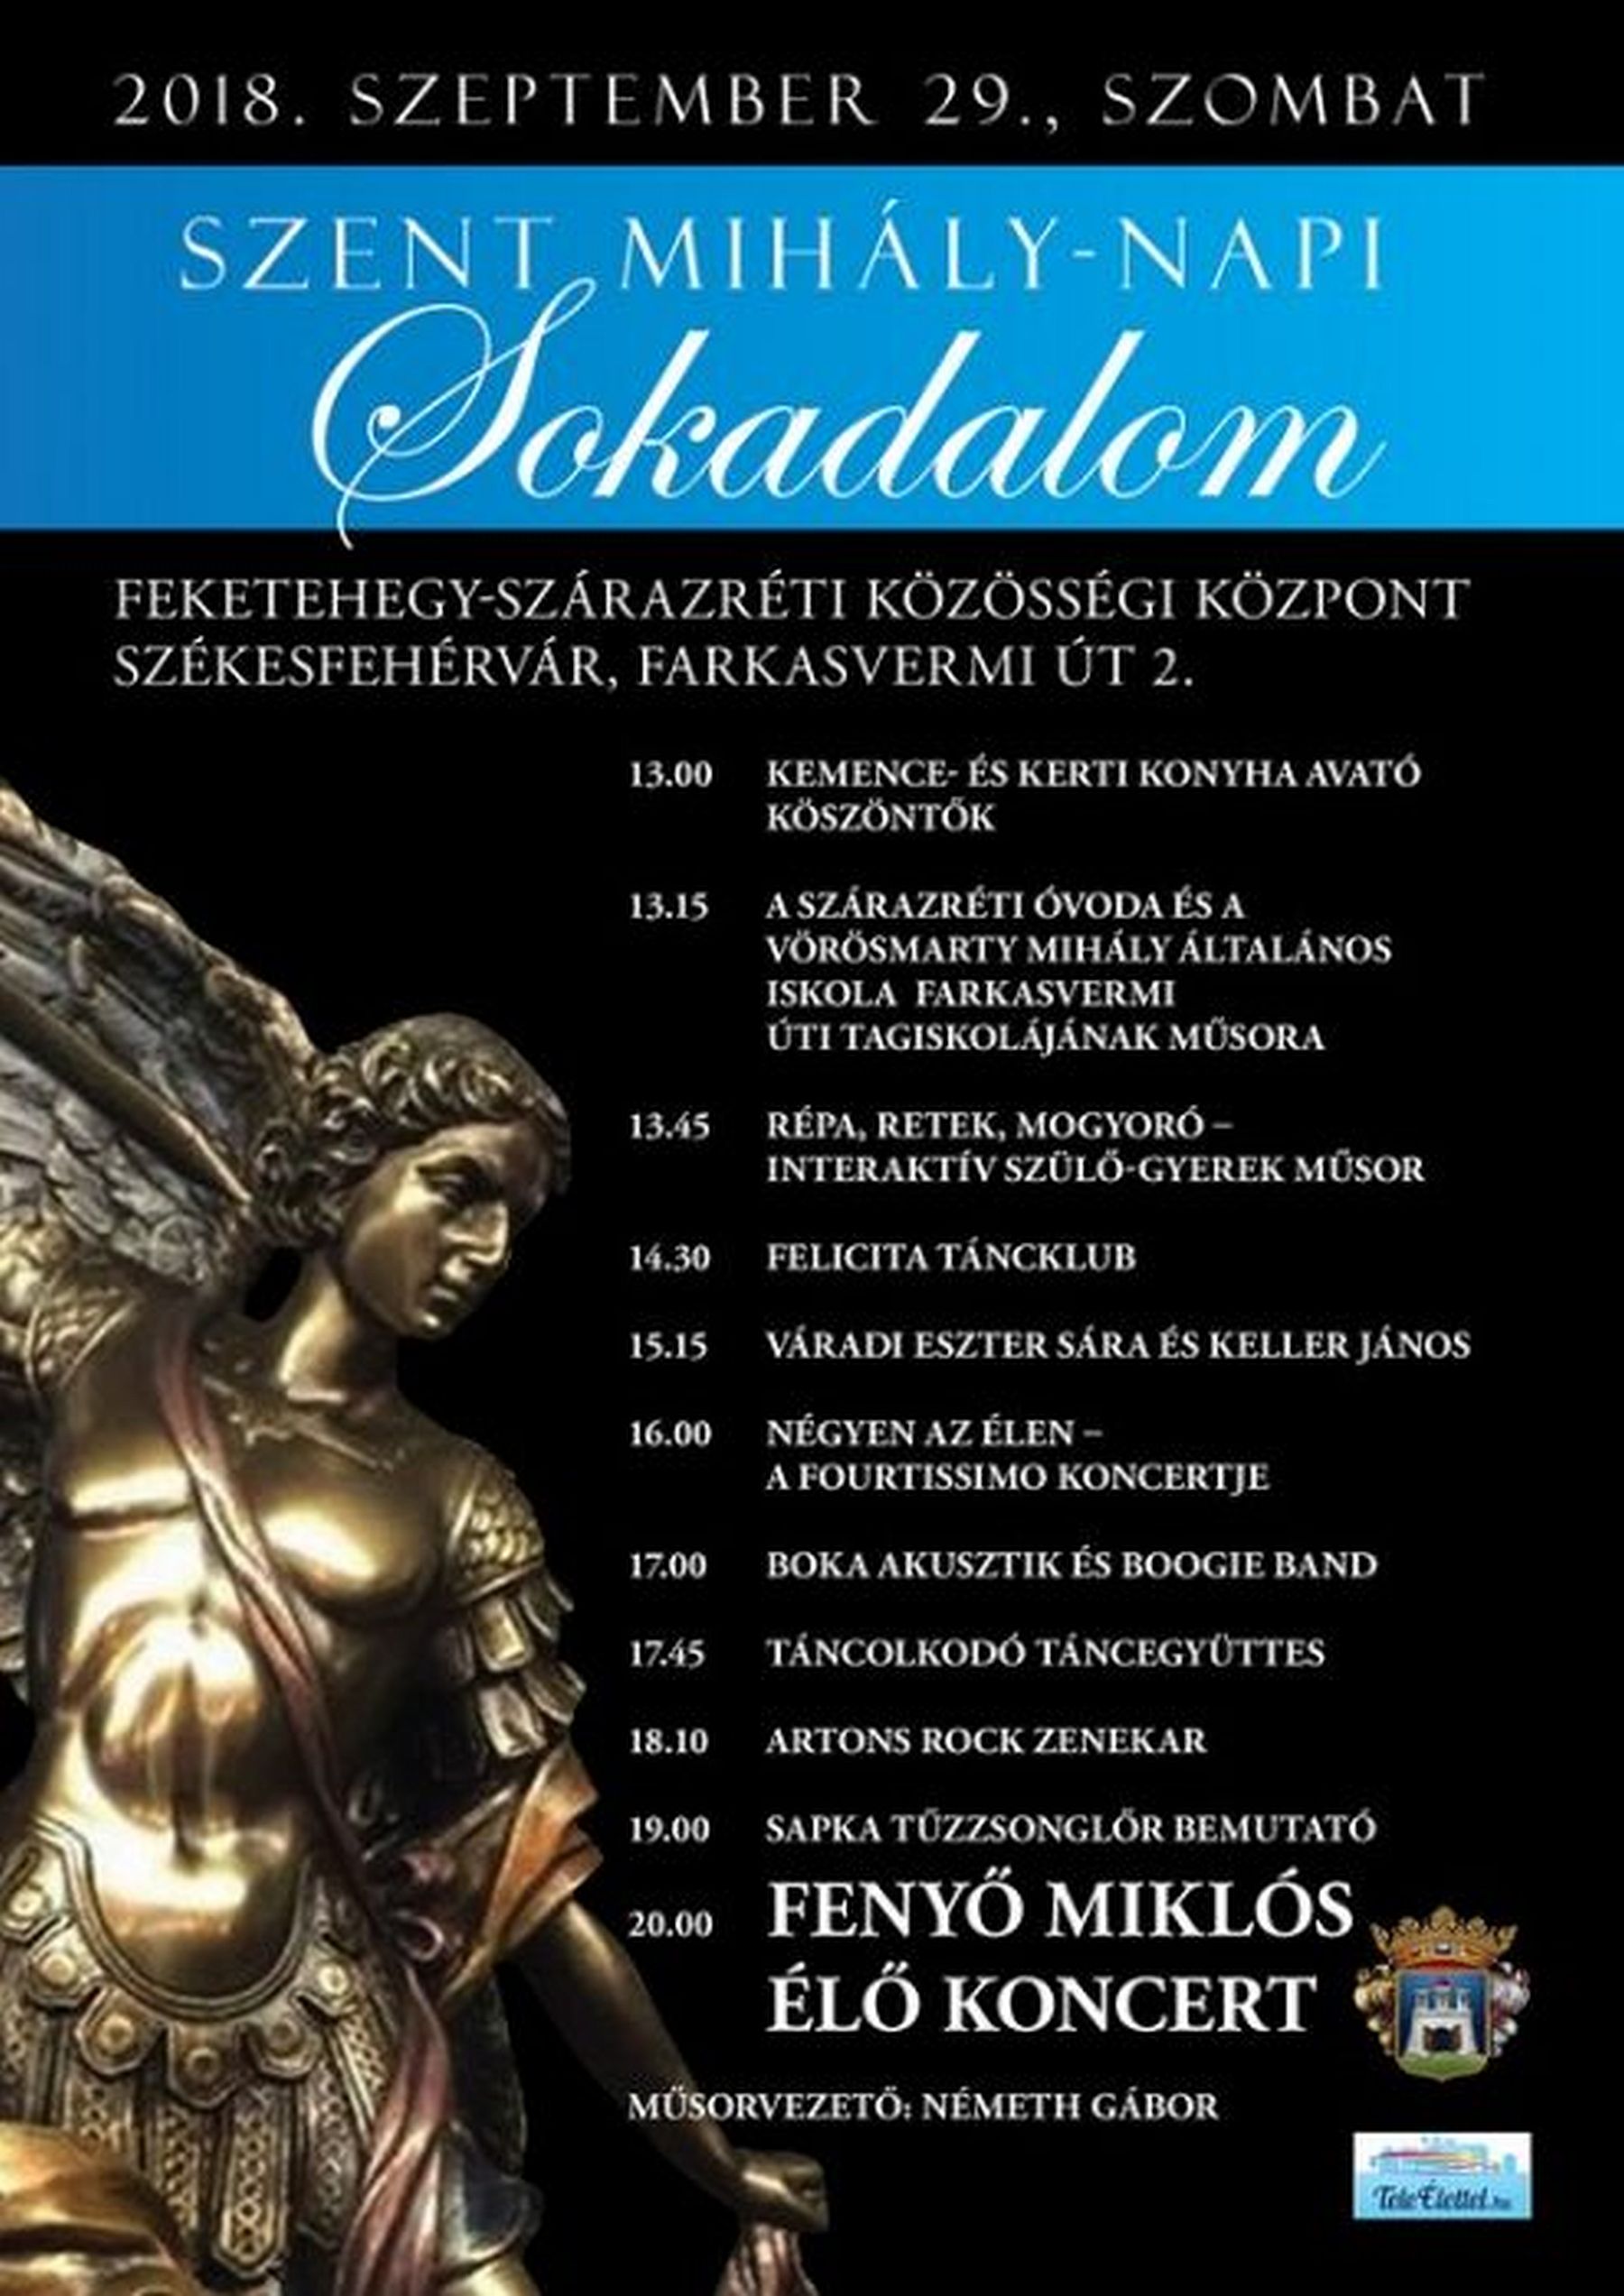 Kemenceavatás és Fenyő Miklós-koncert is lesz a Szent Mihály-napi Sokadalmon